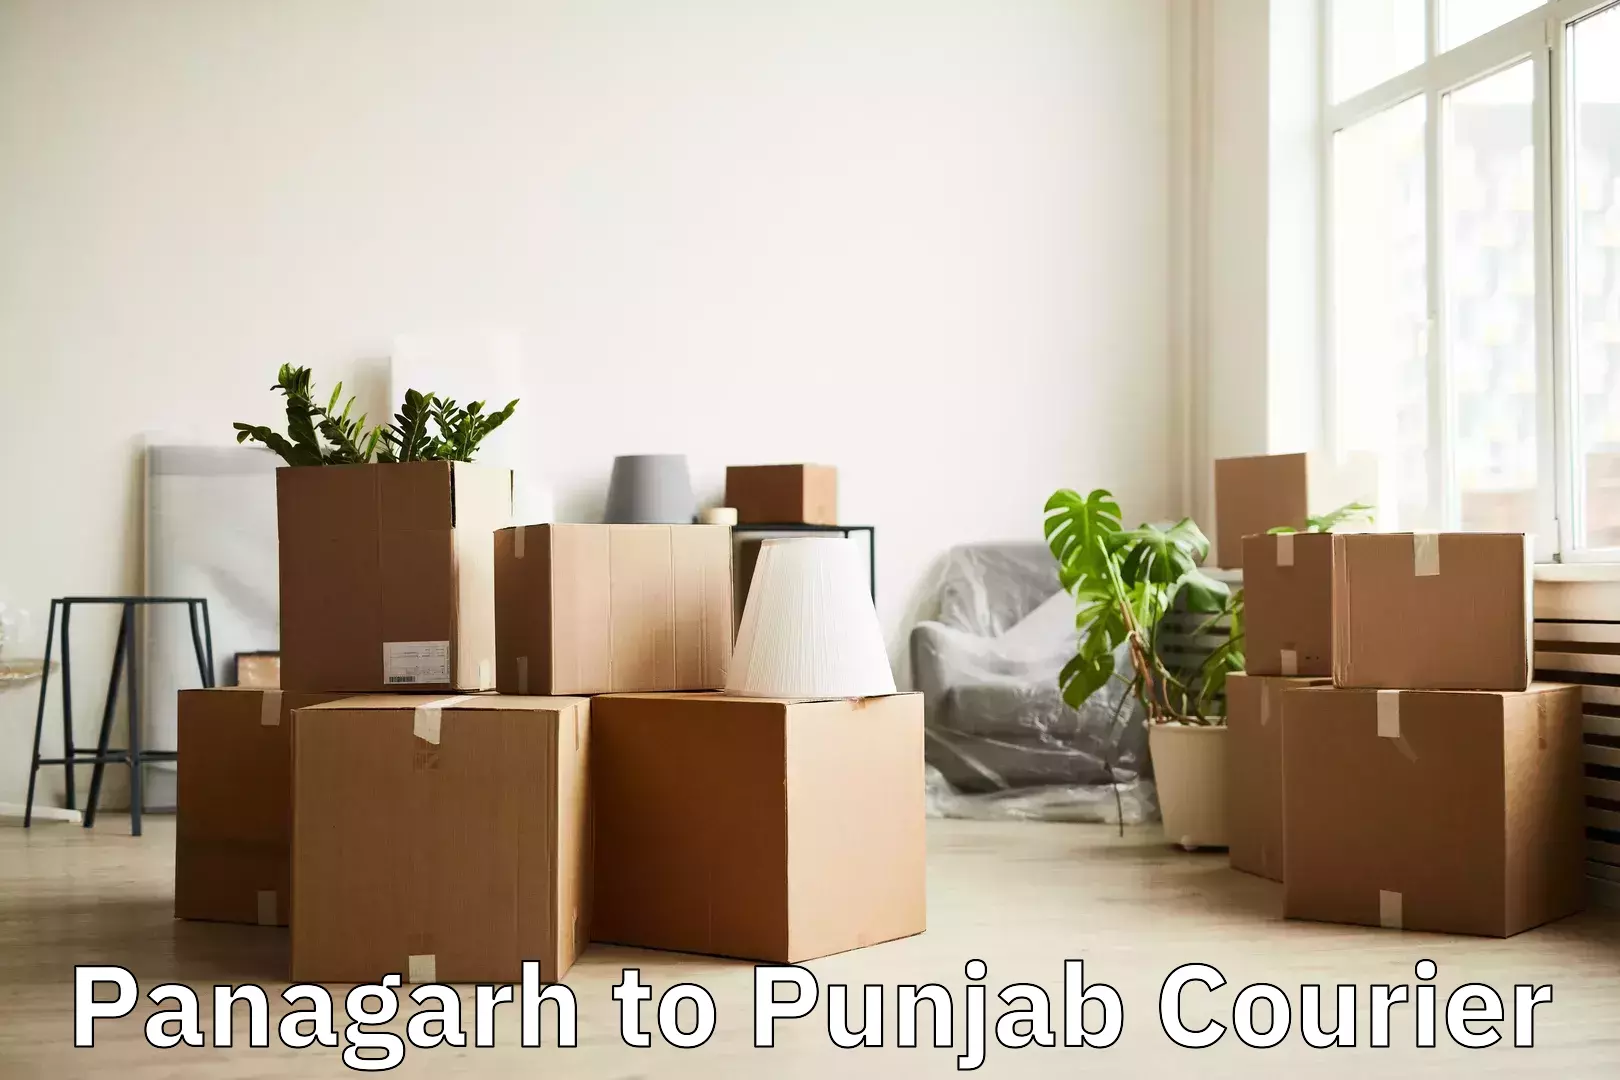 Baggage transport quote Panagarh to Punjab